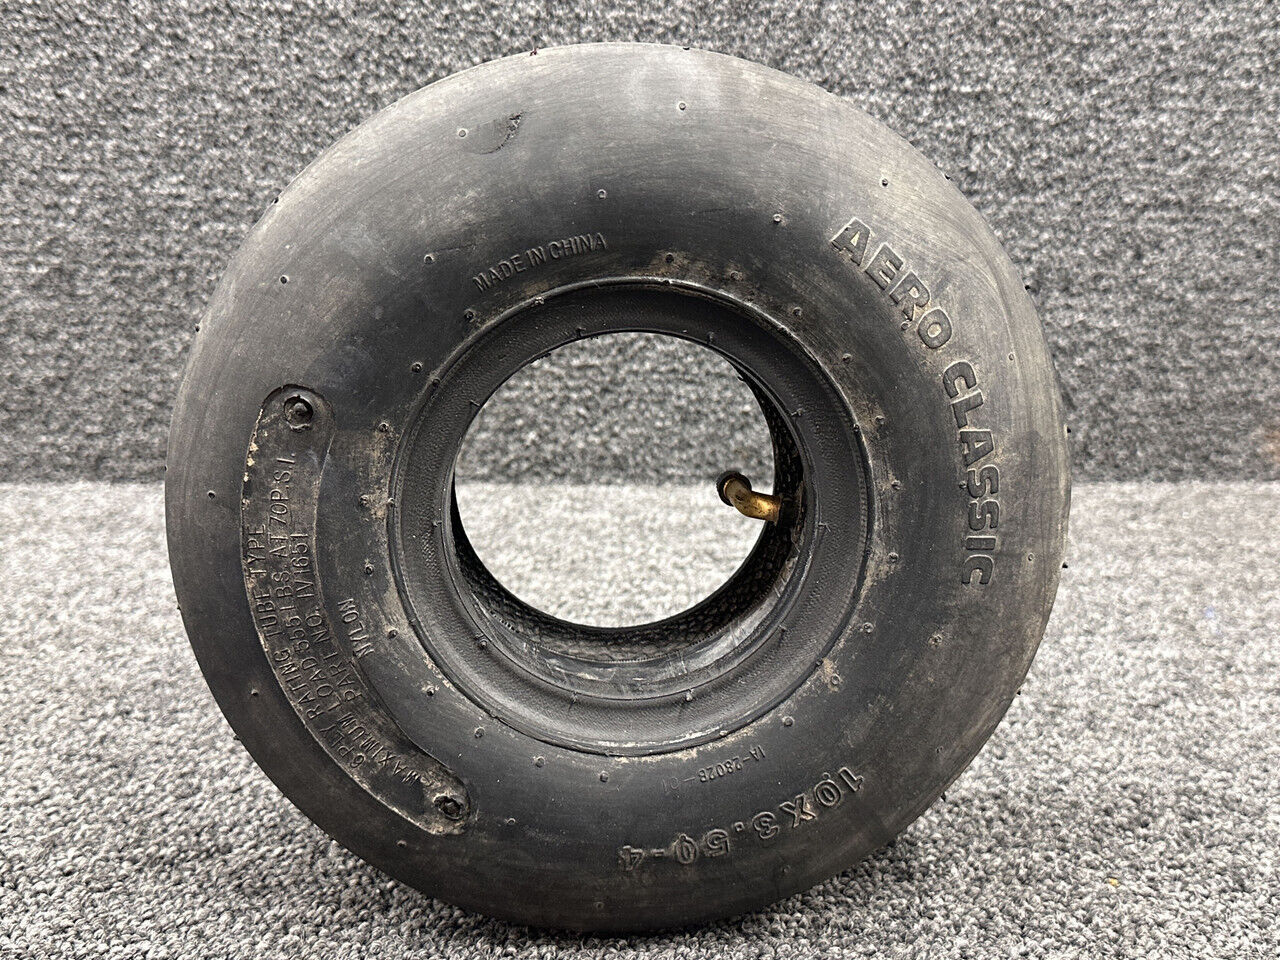 1V1651 Aero Classic 10x3.50-4 Heavy Duty Rib Tire with Inner Tube